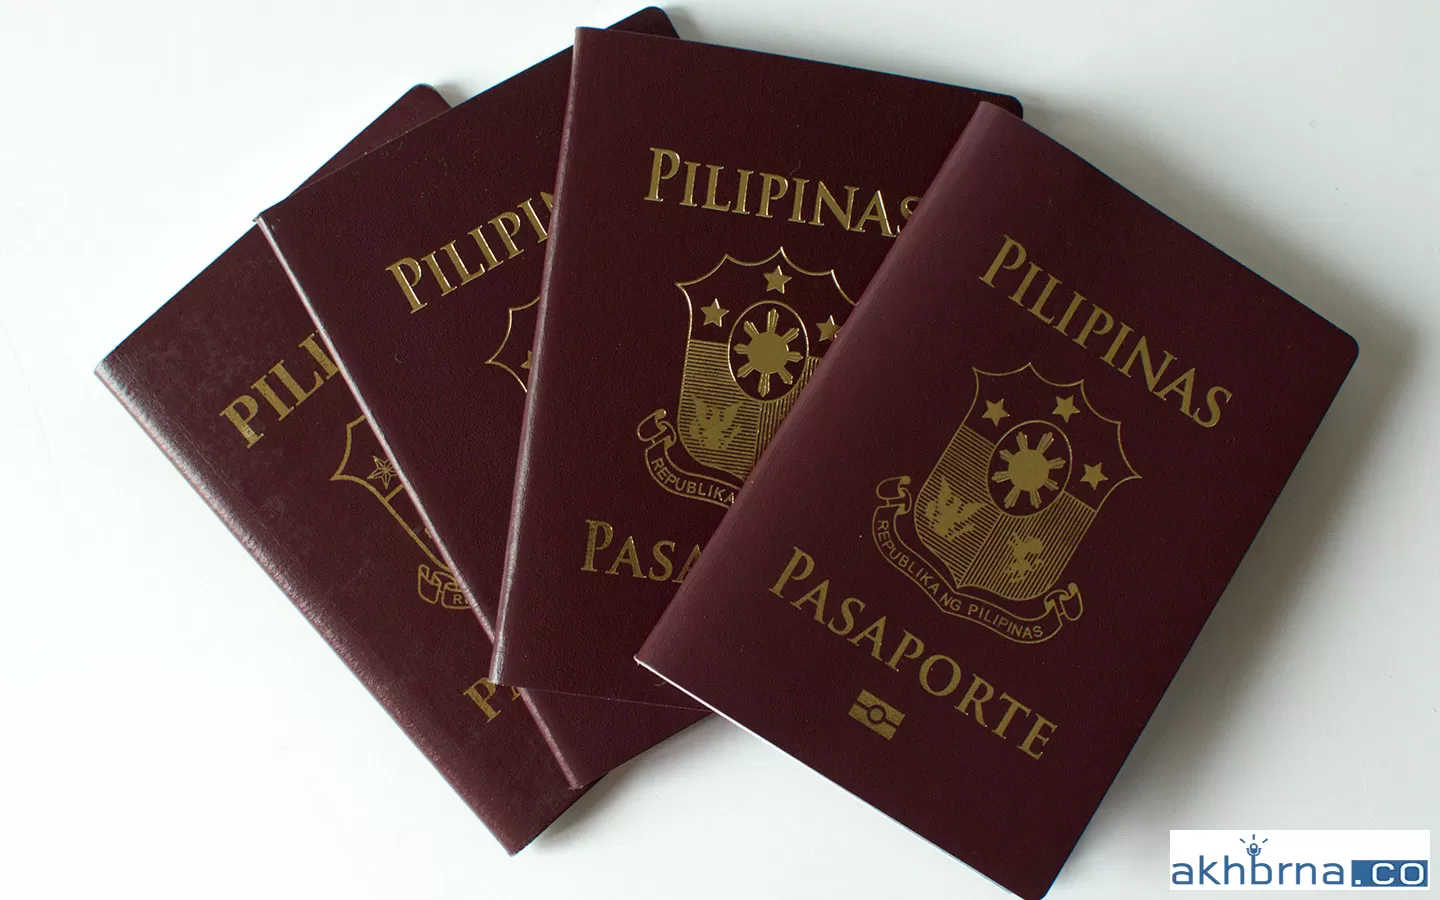 Filipino expats claiming passports